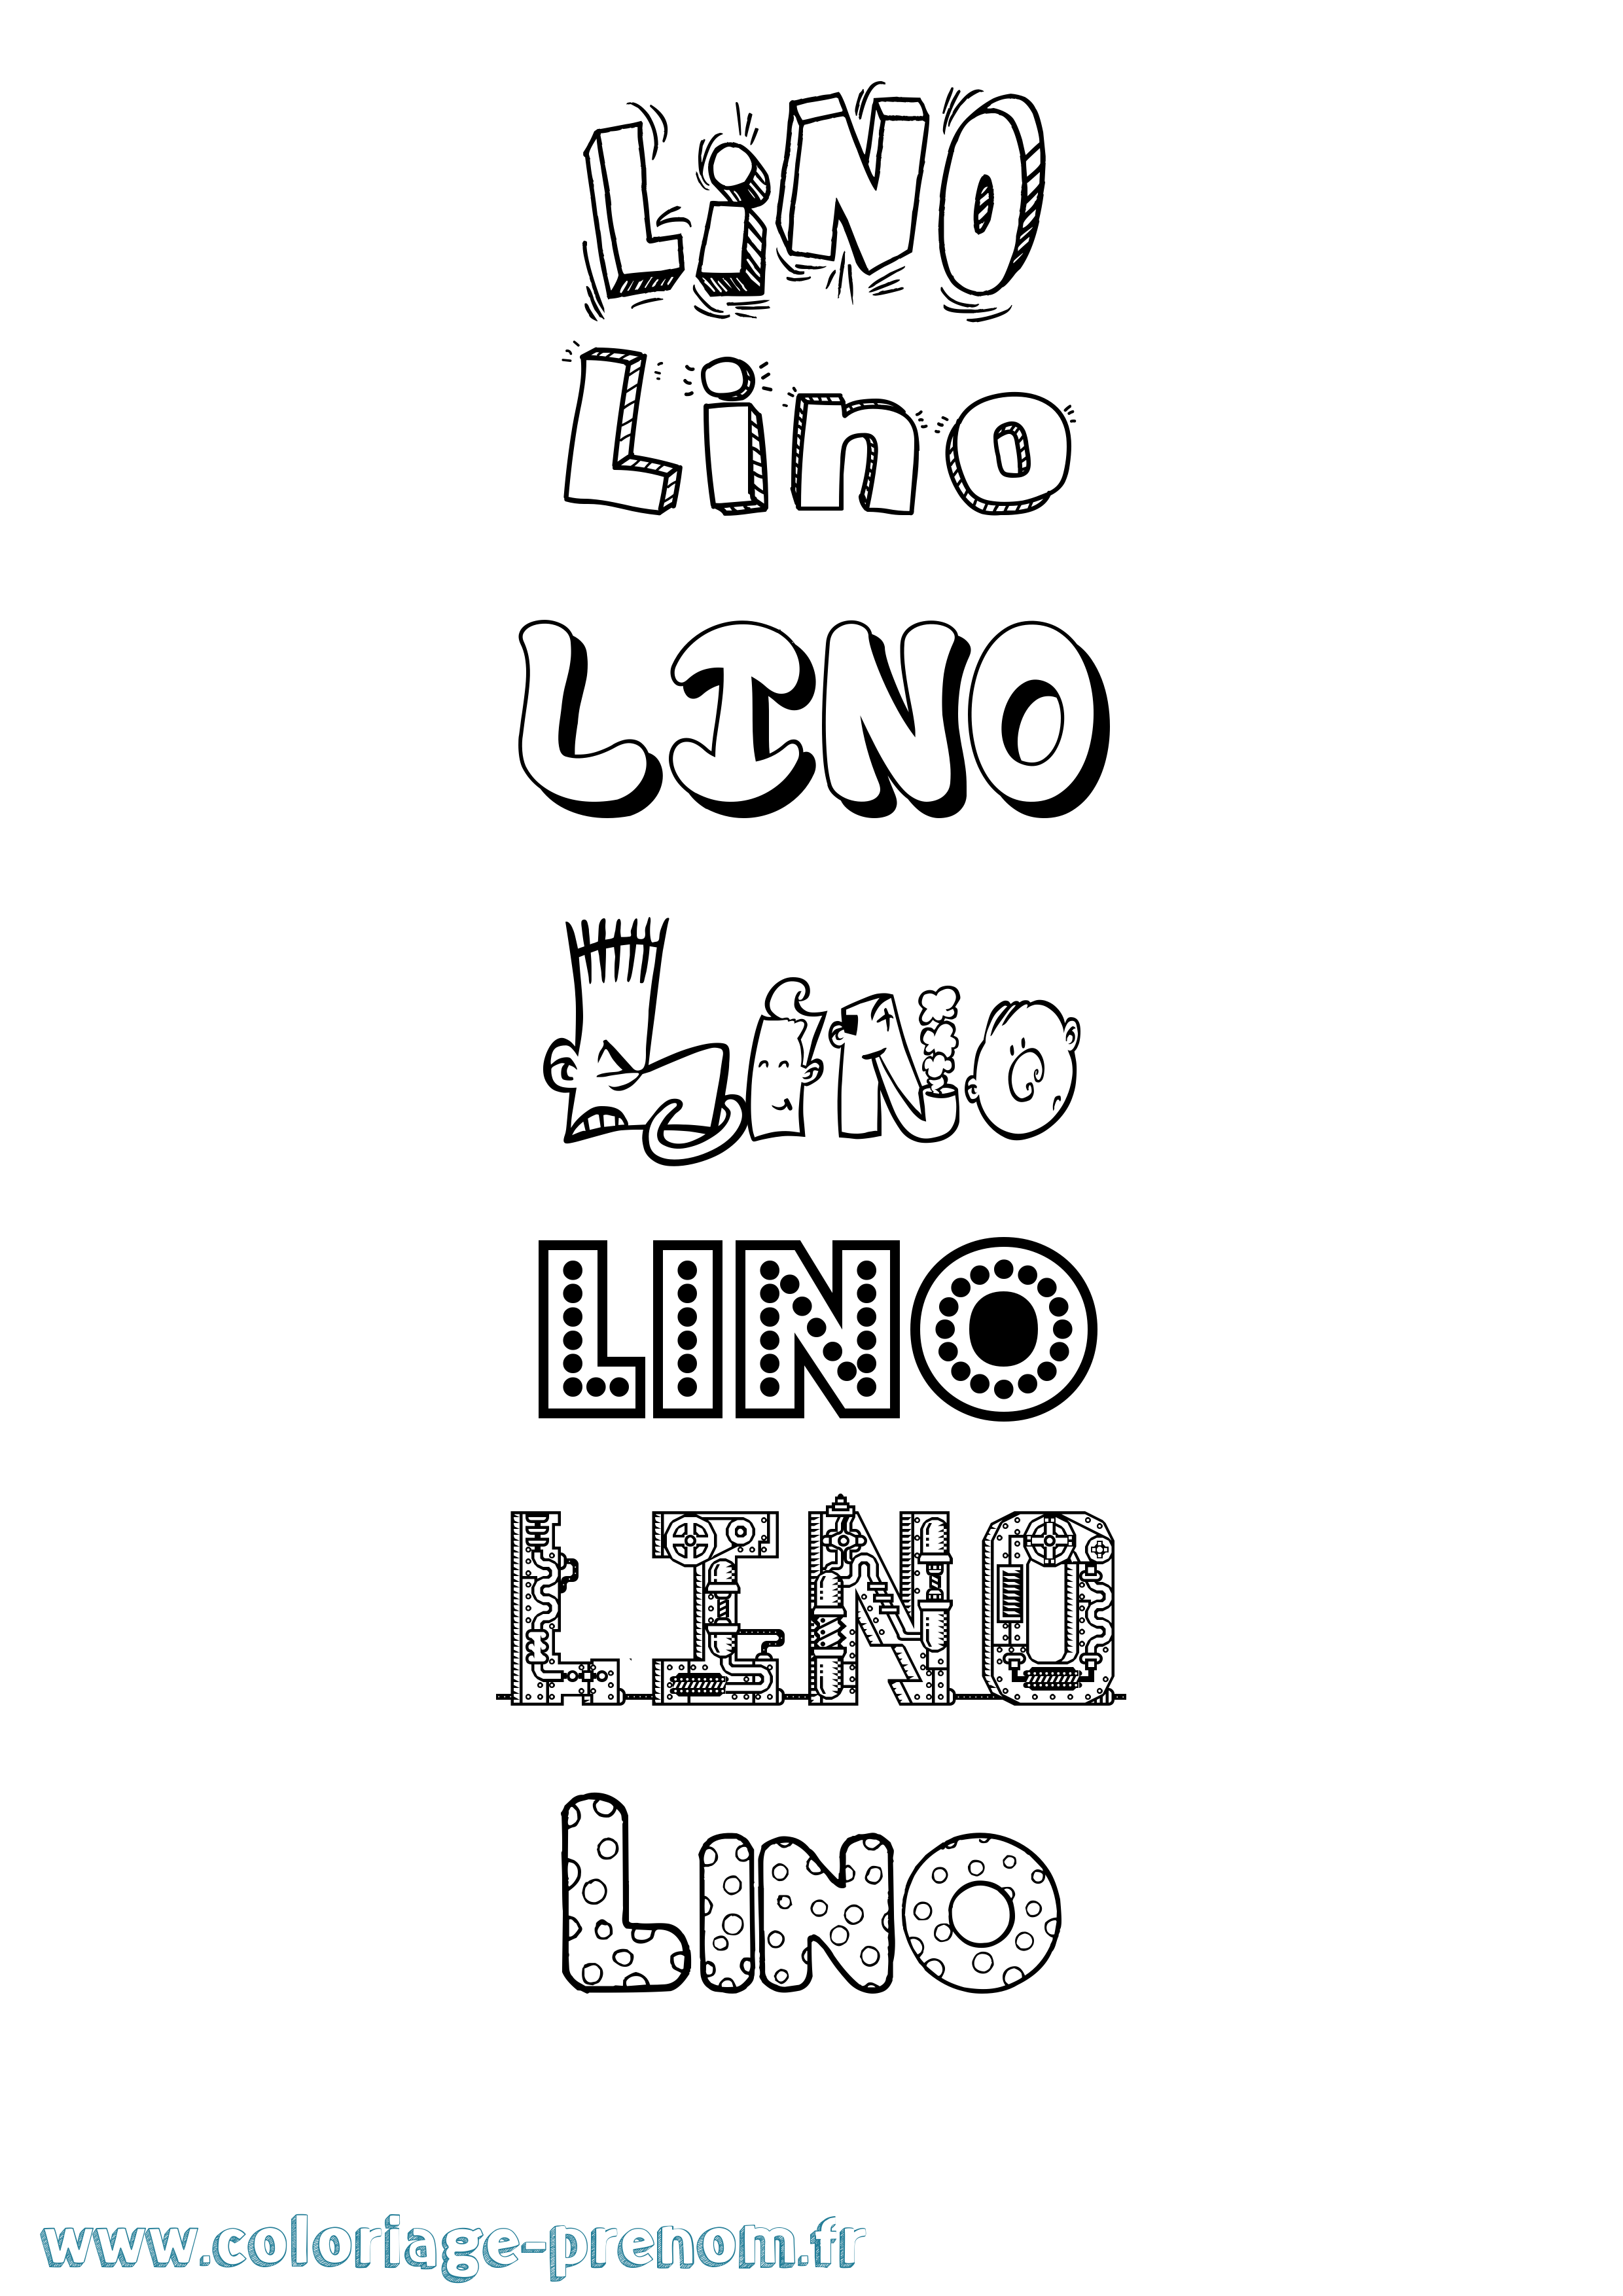 Coloriage prénom Lino